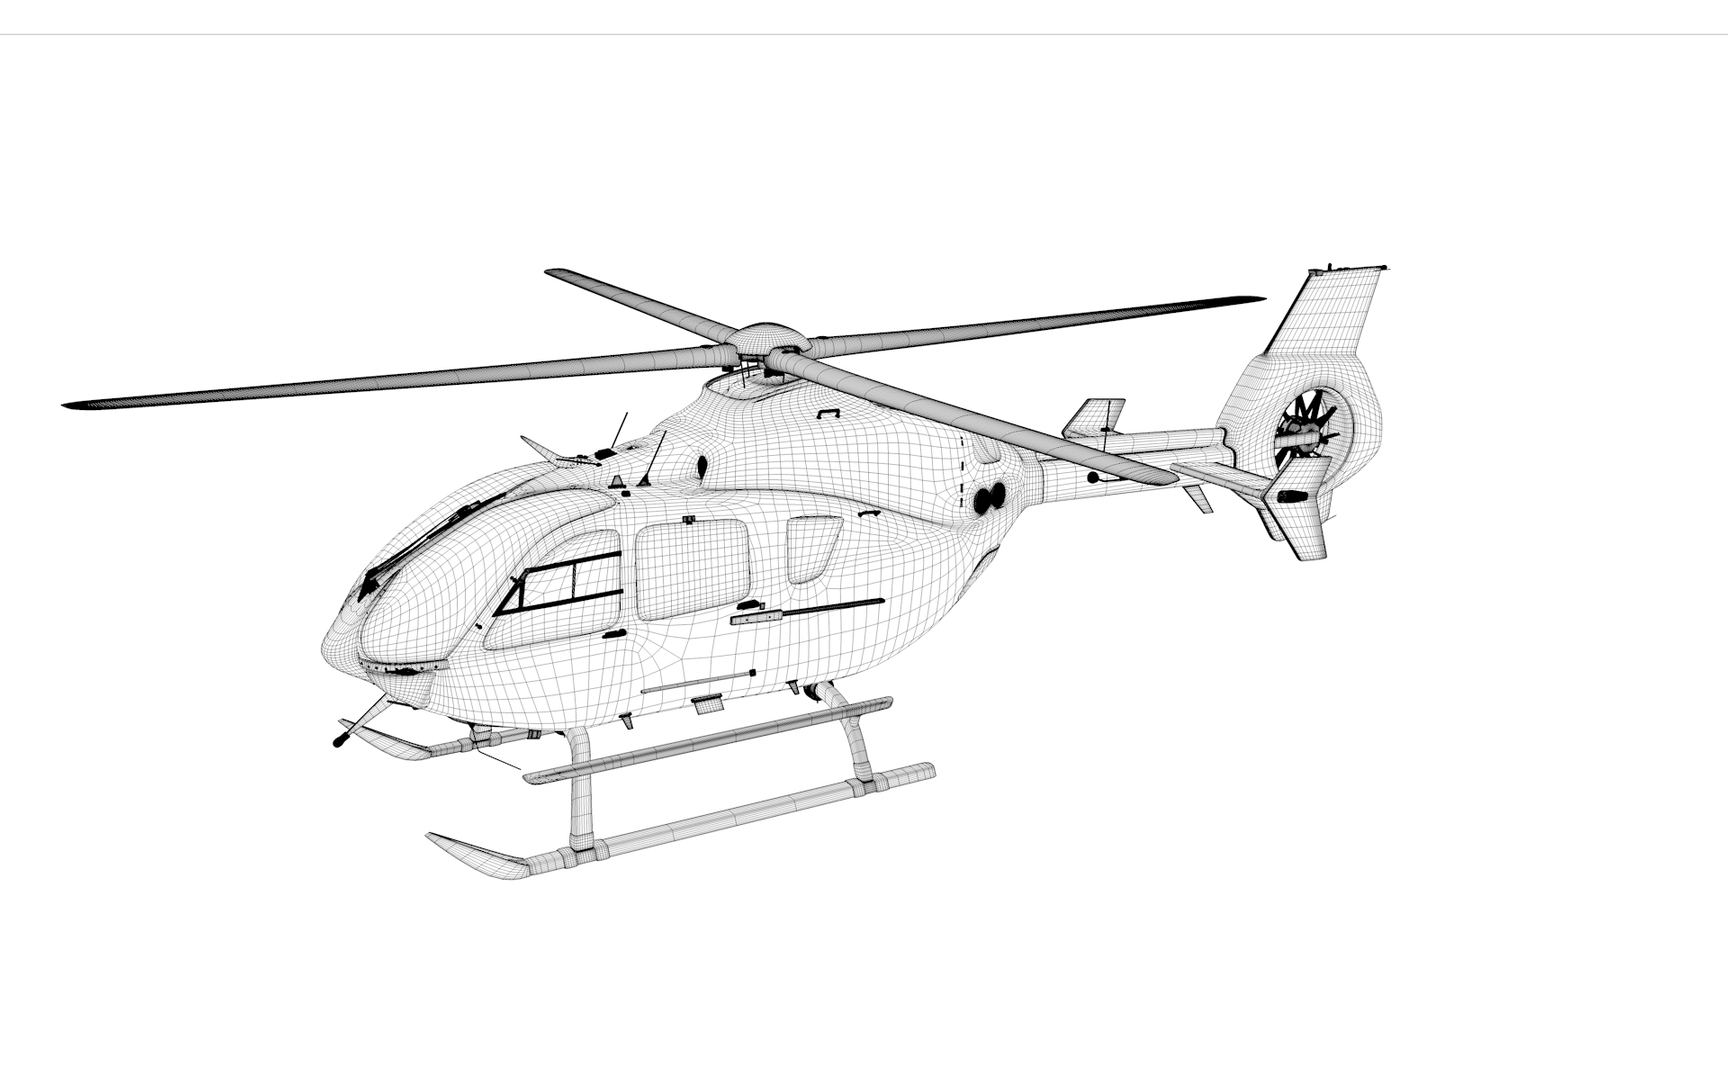 Eurocopter EC-135 SWISS AIR FORCE L1987 3D https://p.turbosquid.com/ts-thumb/Bi/R32ura/KN/0000/png/1683413719/1920x1080/turn_fit_q99/8197427e8c16b25fad662c8f44762c3e0568849d/0000-1.jpg